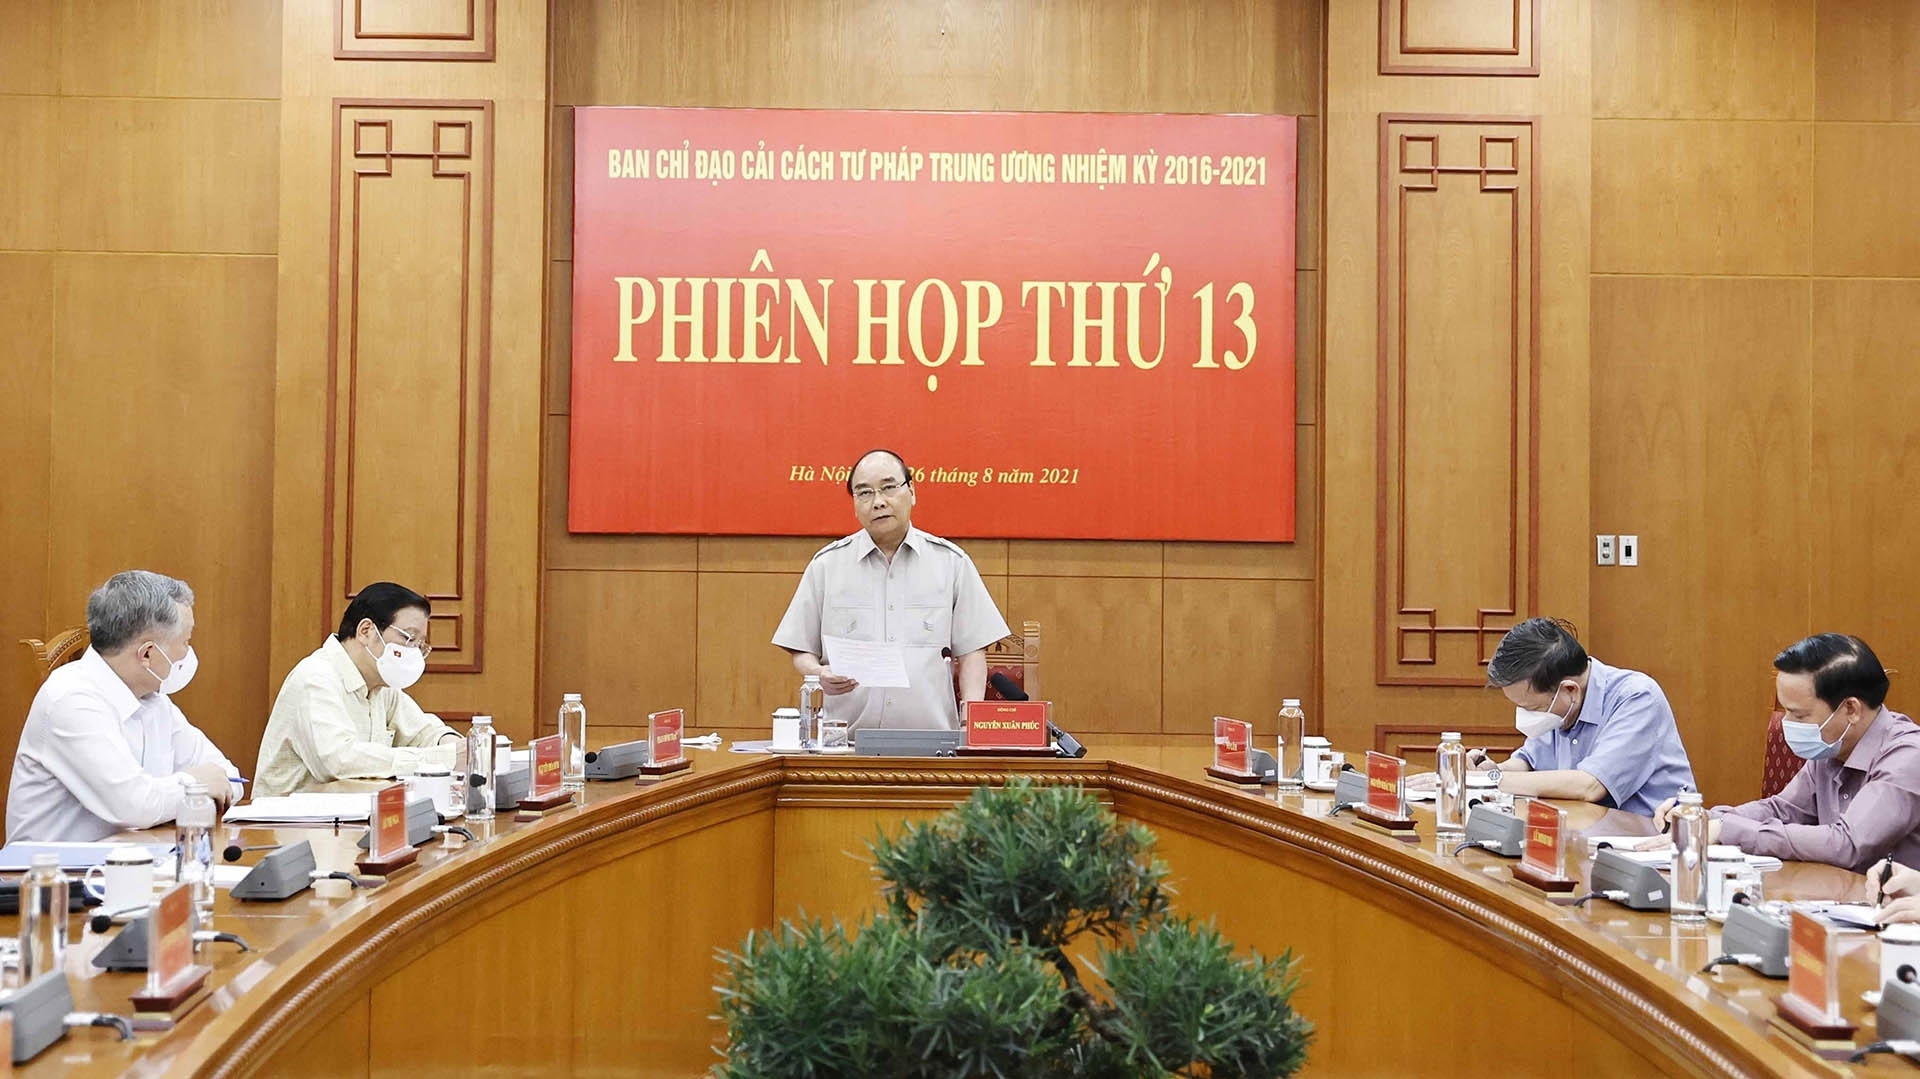 Chủ tịch nước Nguyễn Xuân Phúc chủ trì Phiên họp thứ 13 Ban Chỉ đạo Cải cách tư pháp Trung ương